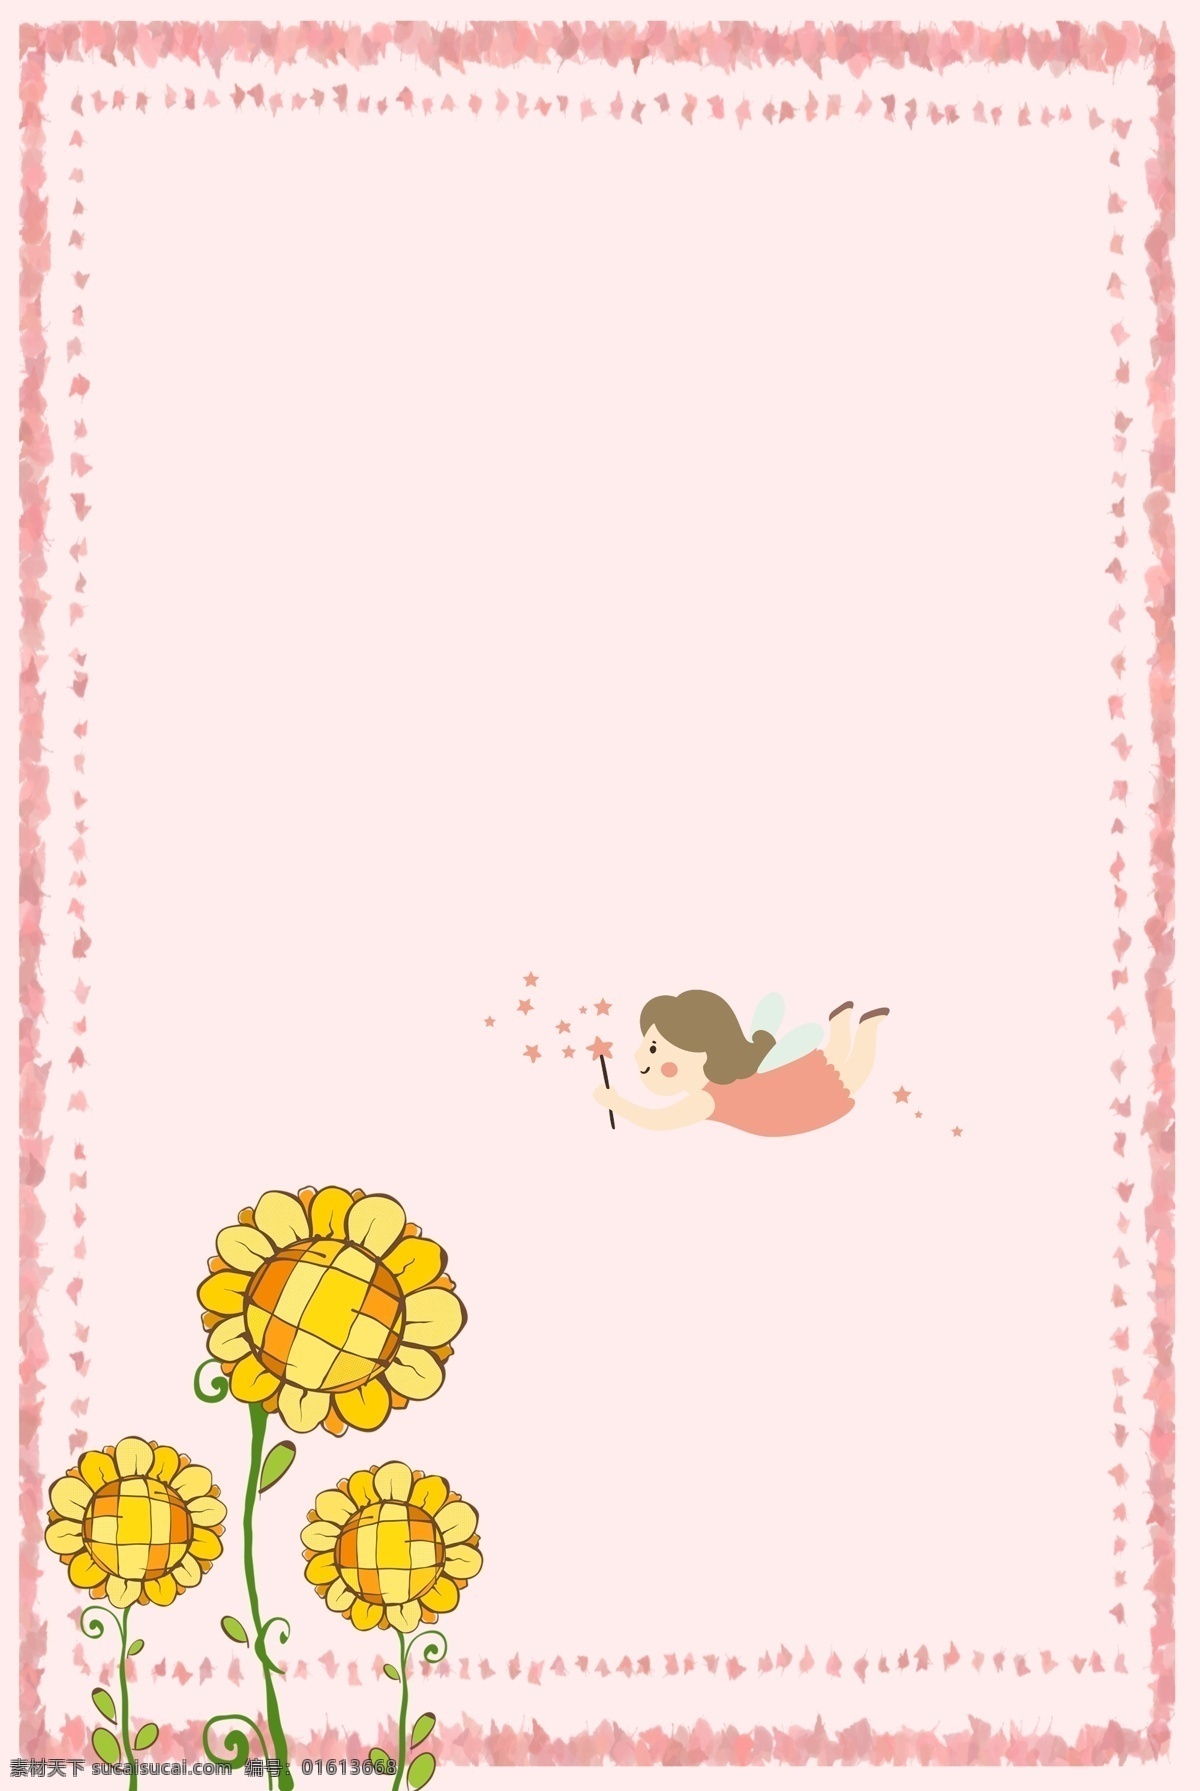 小 清新 唯美 粉色 系 仙女 采花 图 卡通 可爱风 粉色系 向日葵 边框 背景图 花边